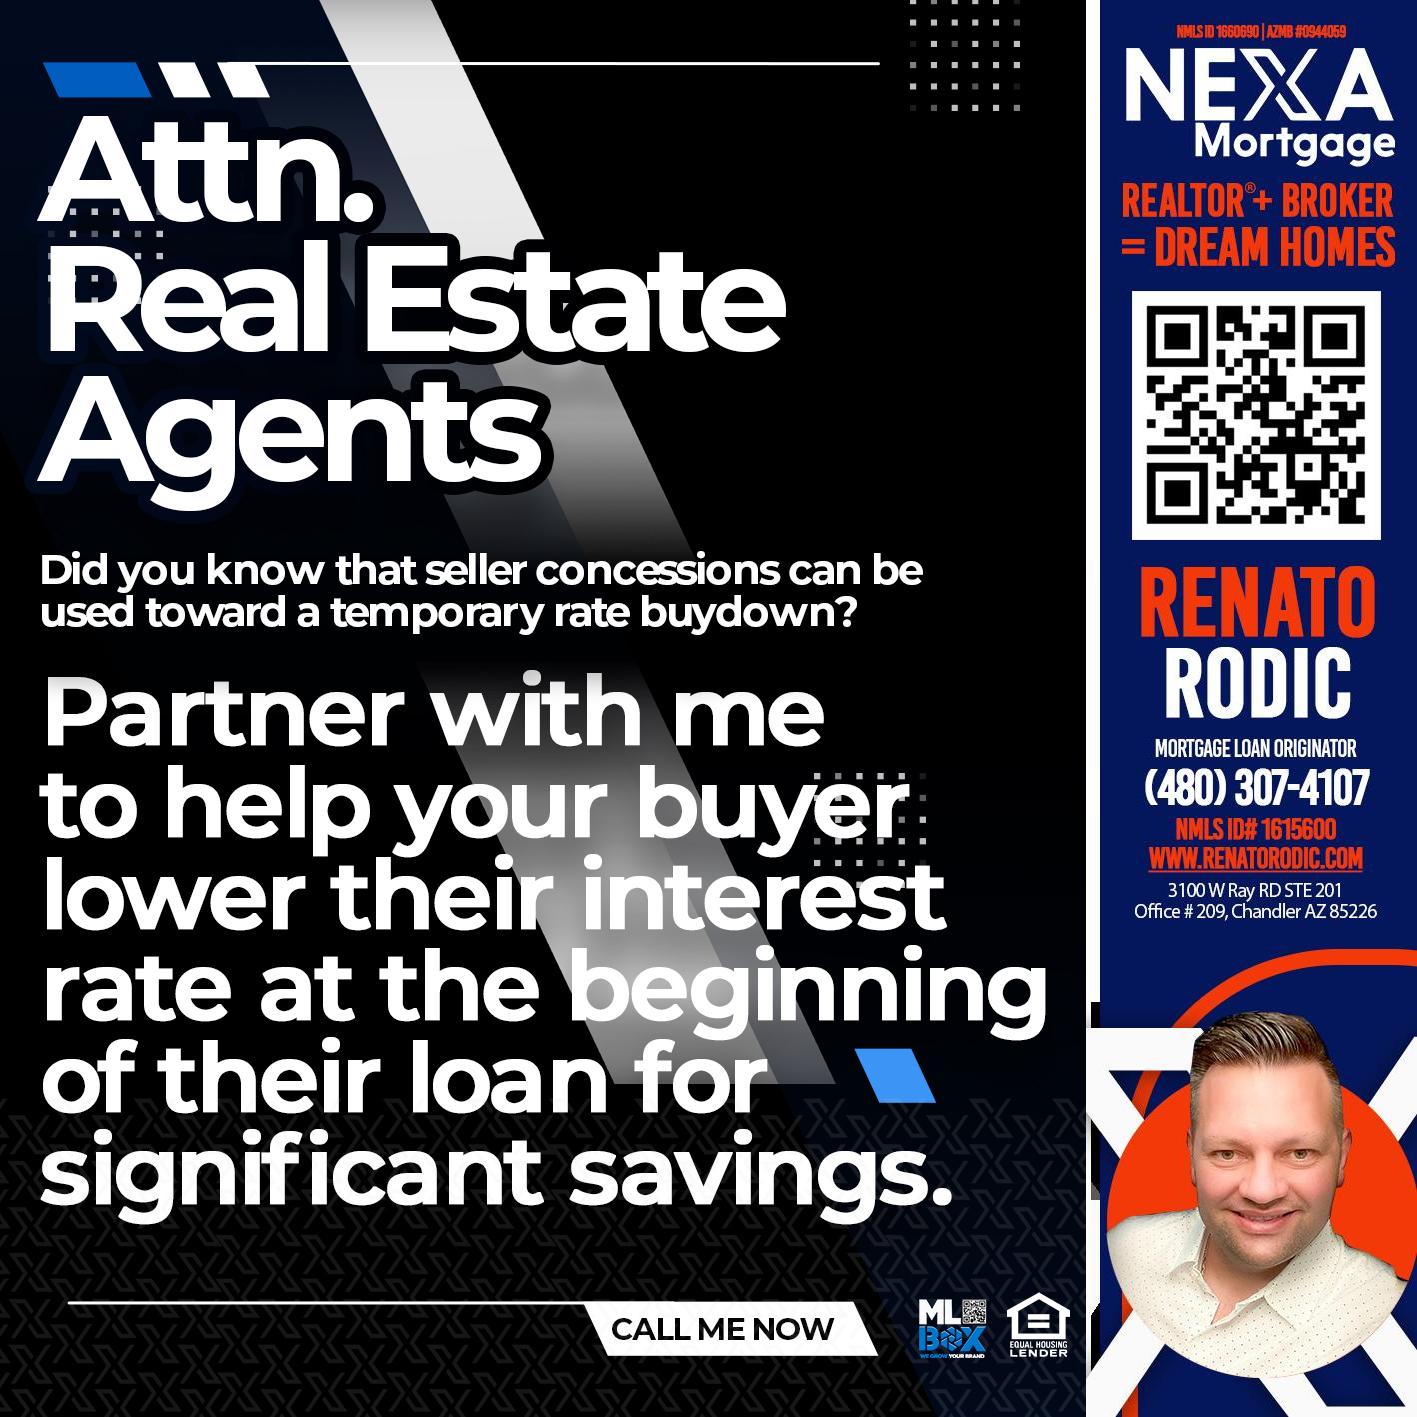 TTN. REAL ESTATE AGENTS - Renato Rodic -Mortgage Loan Originator